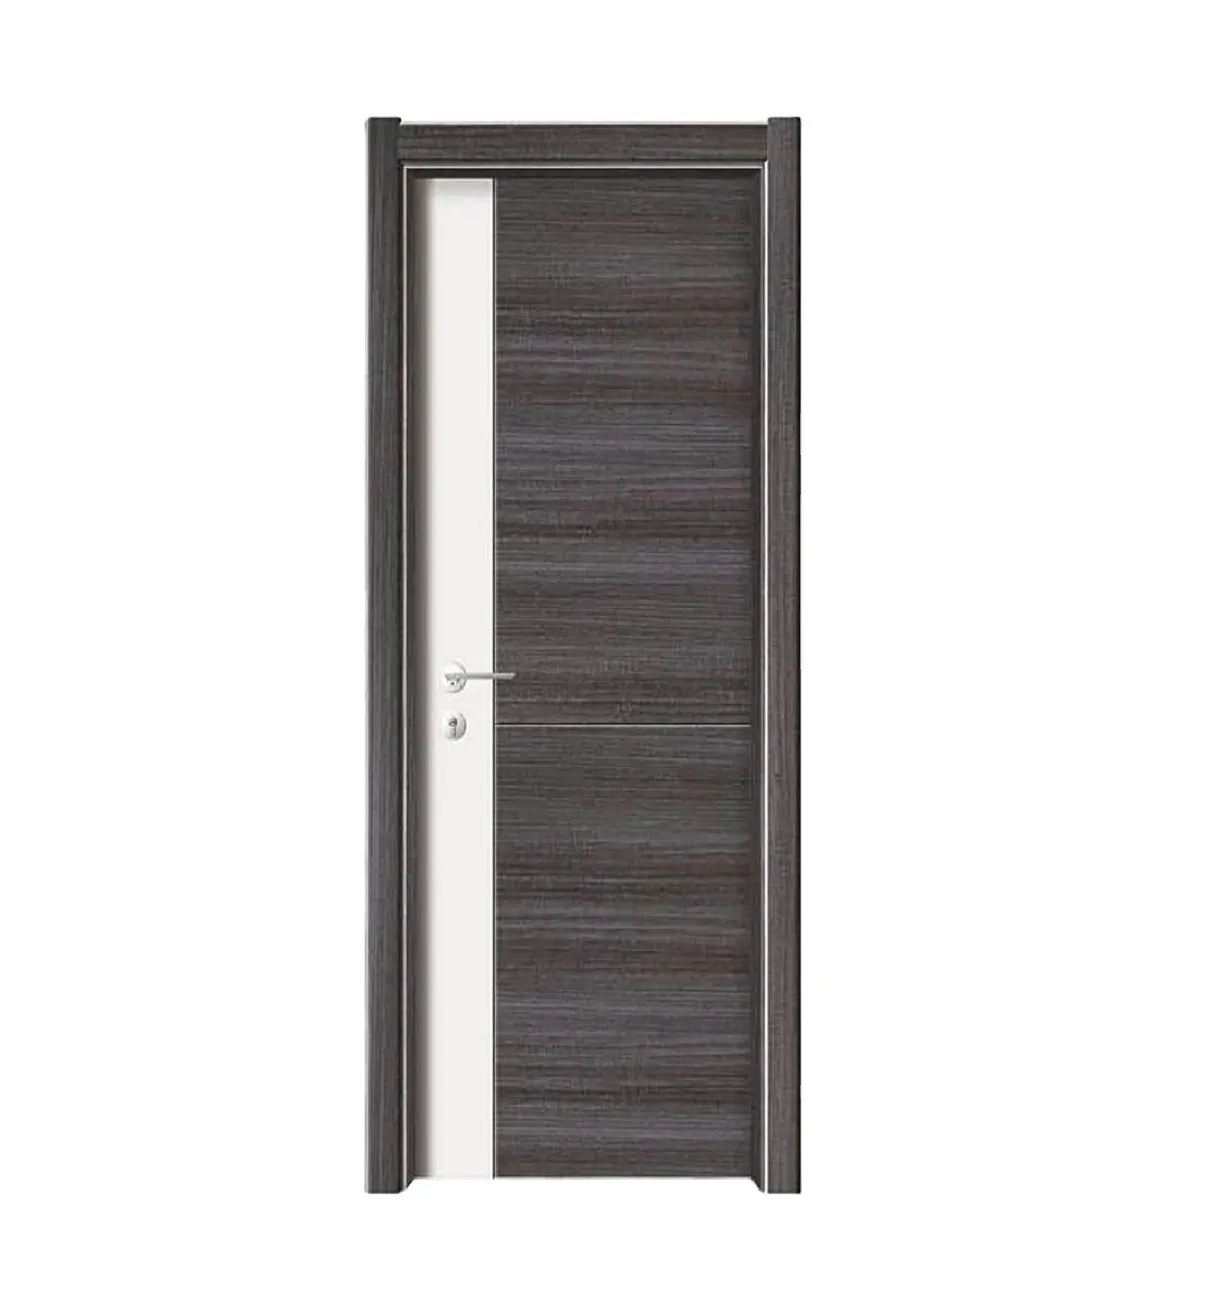 Porte in legno composito a prova di umidità per porte interne in legno con anima cava